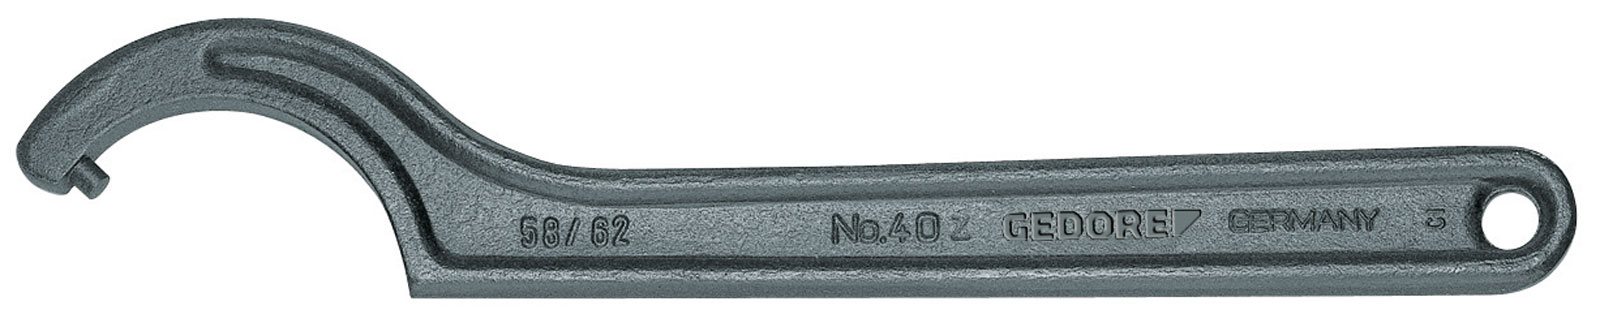 Bild von 40 Z 155-165 Hakenschlüssel, DIN 1810 Form B, 155-165 mm